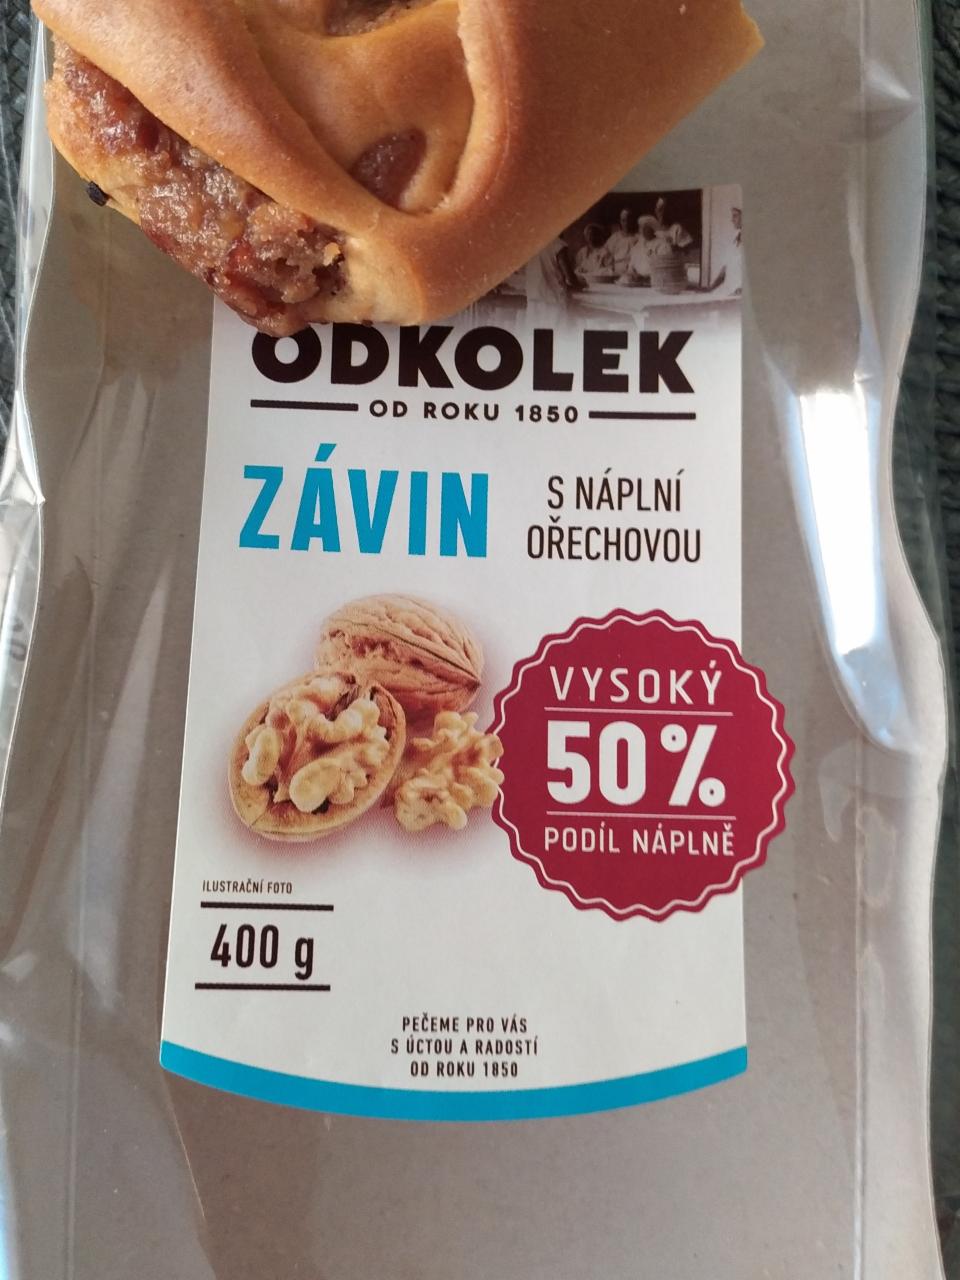 Fotografie - Závin s náplní ořechovou 50% Fr.Odkolek